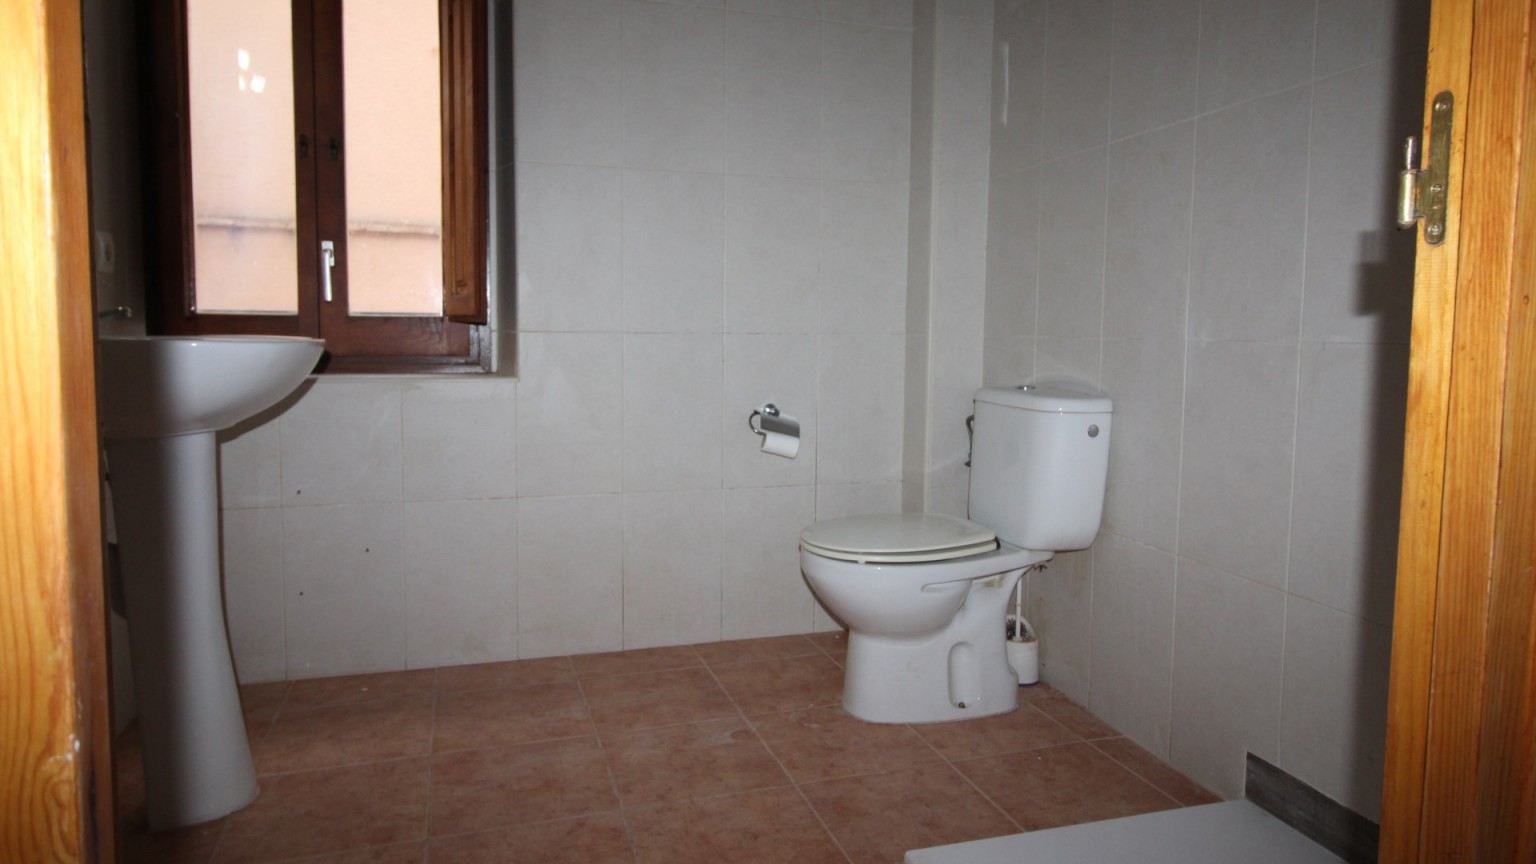 Pis en venda de 2 habitacions, en el municipi de Lladó.